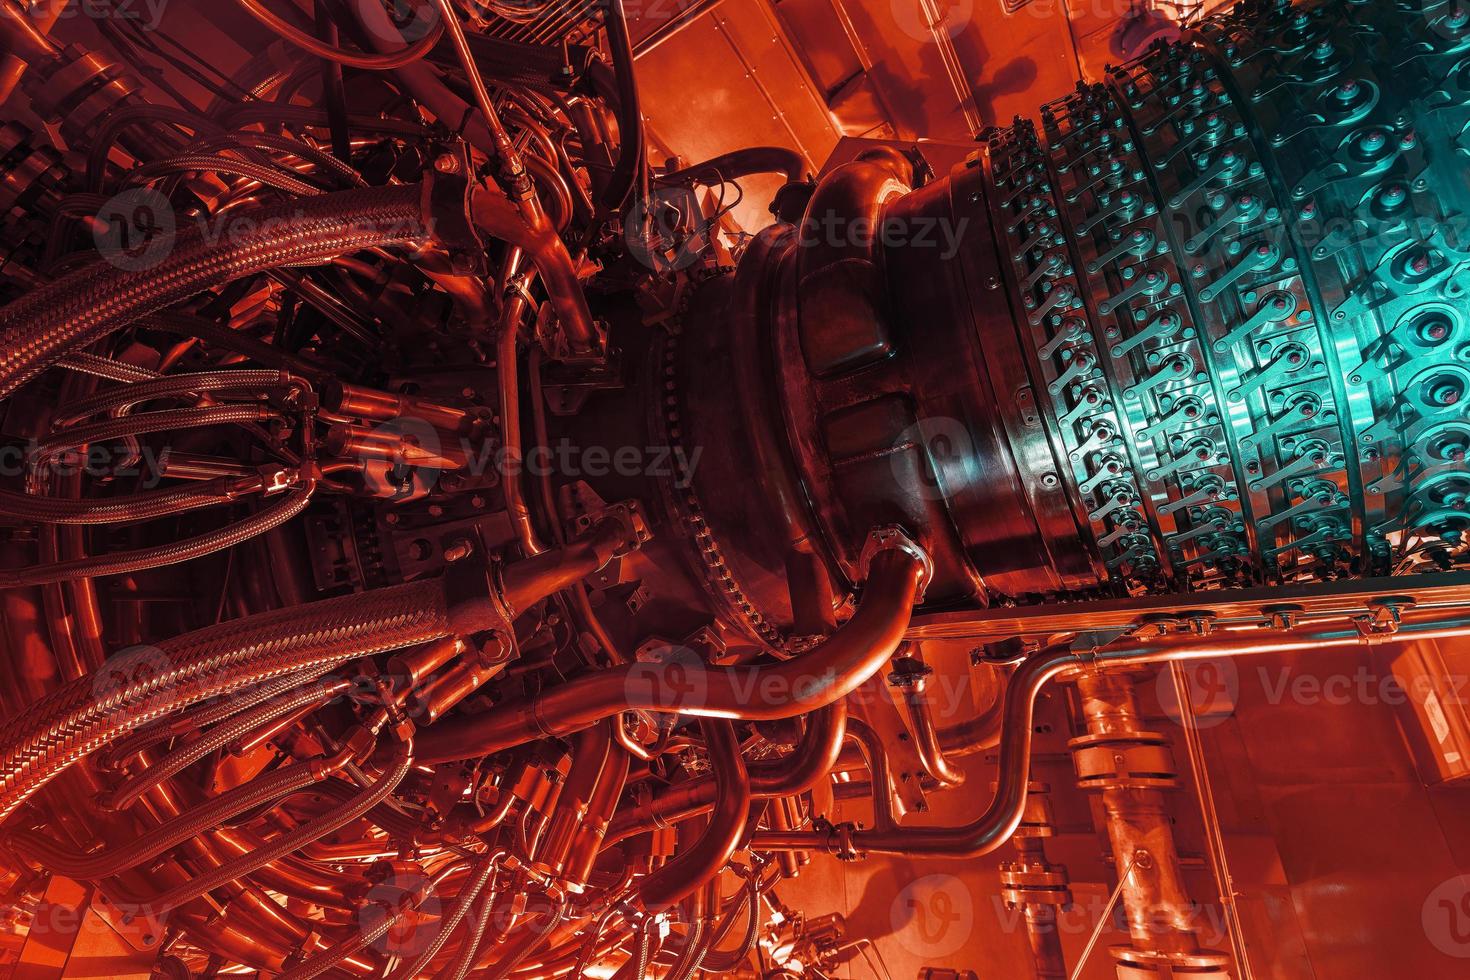 gas turbin motor av utfodra gas kompressor belägen inuti tryck- inhägnad, de gas turbin motor Begagnade i offshore olja och gas central bearbetning plattform. foto